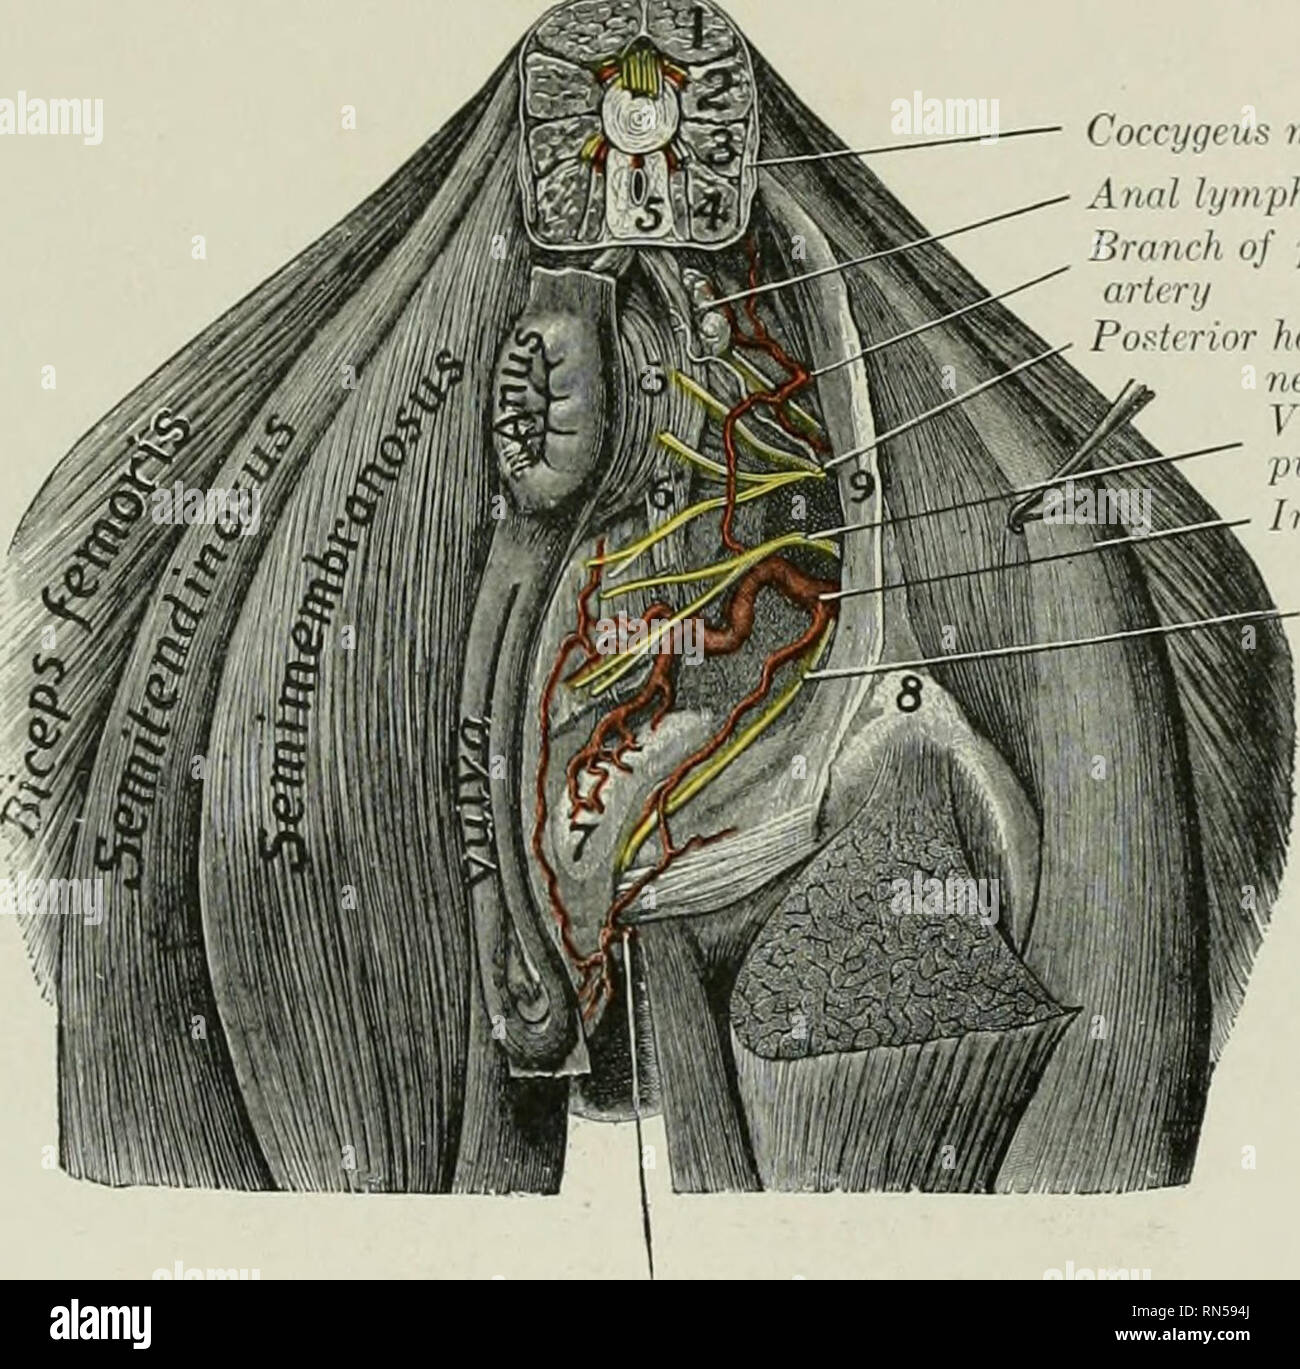 La anatomía de los animales domésticos. Anatomía Veterinaria. La arteria  iliaca interna 669 y obliquus internus abdominis, da ramas a estos  músculos, y termina en el obliquus externus, el cutaneus, y